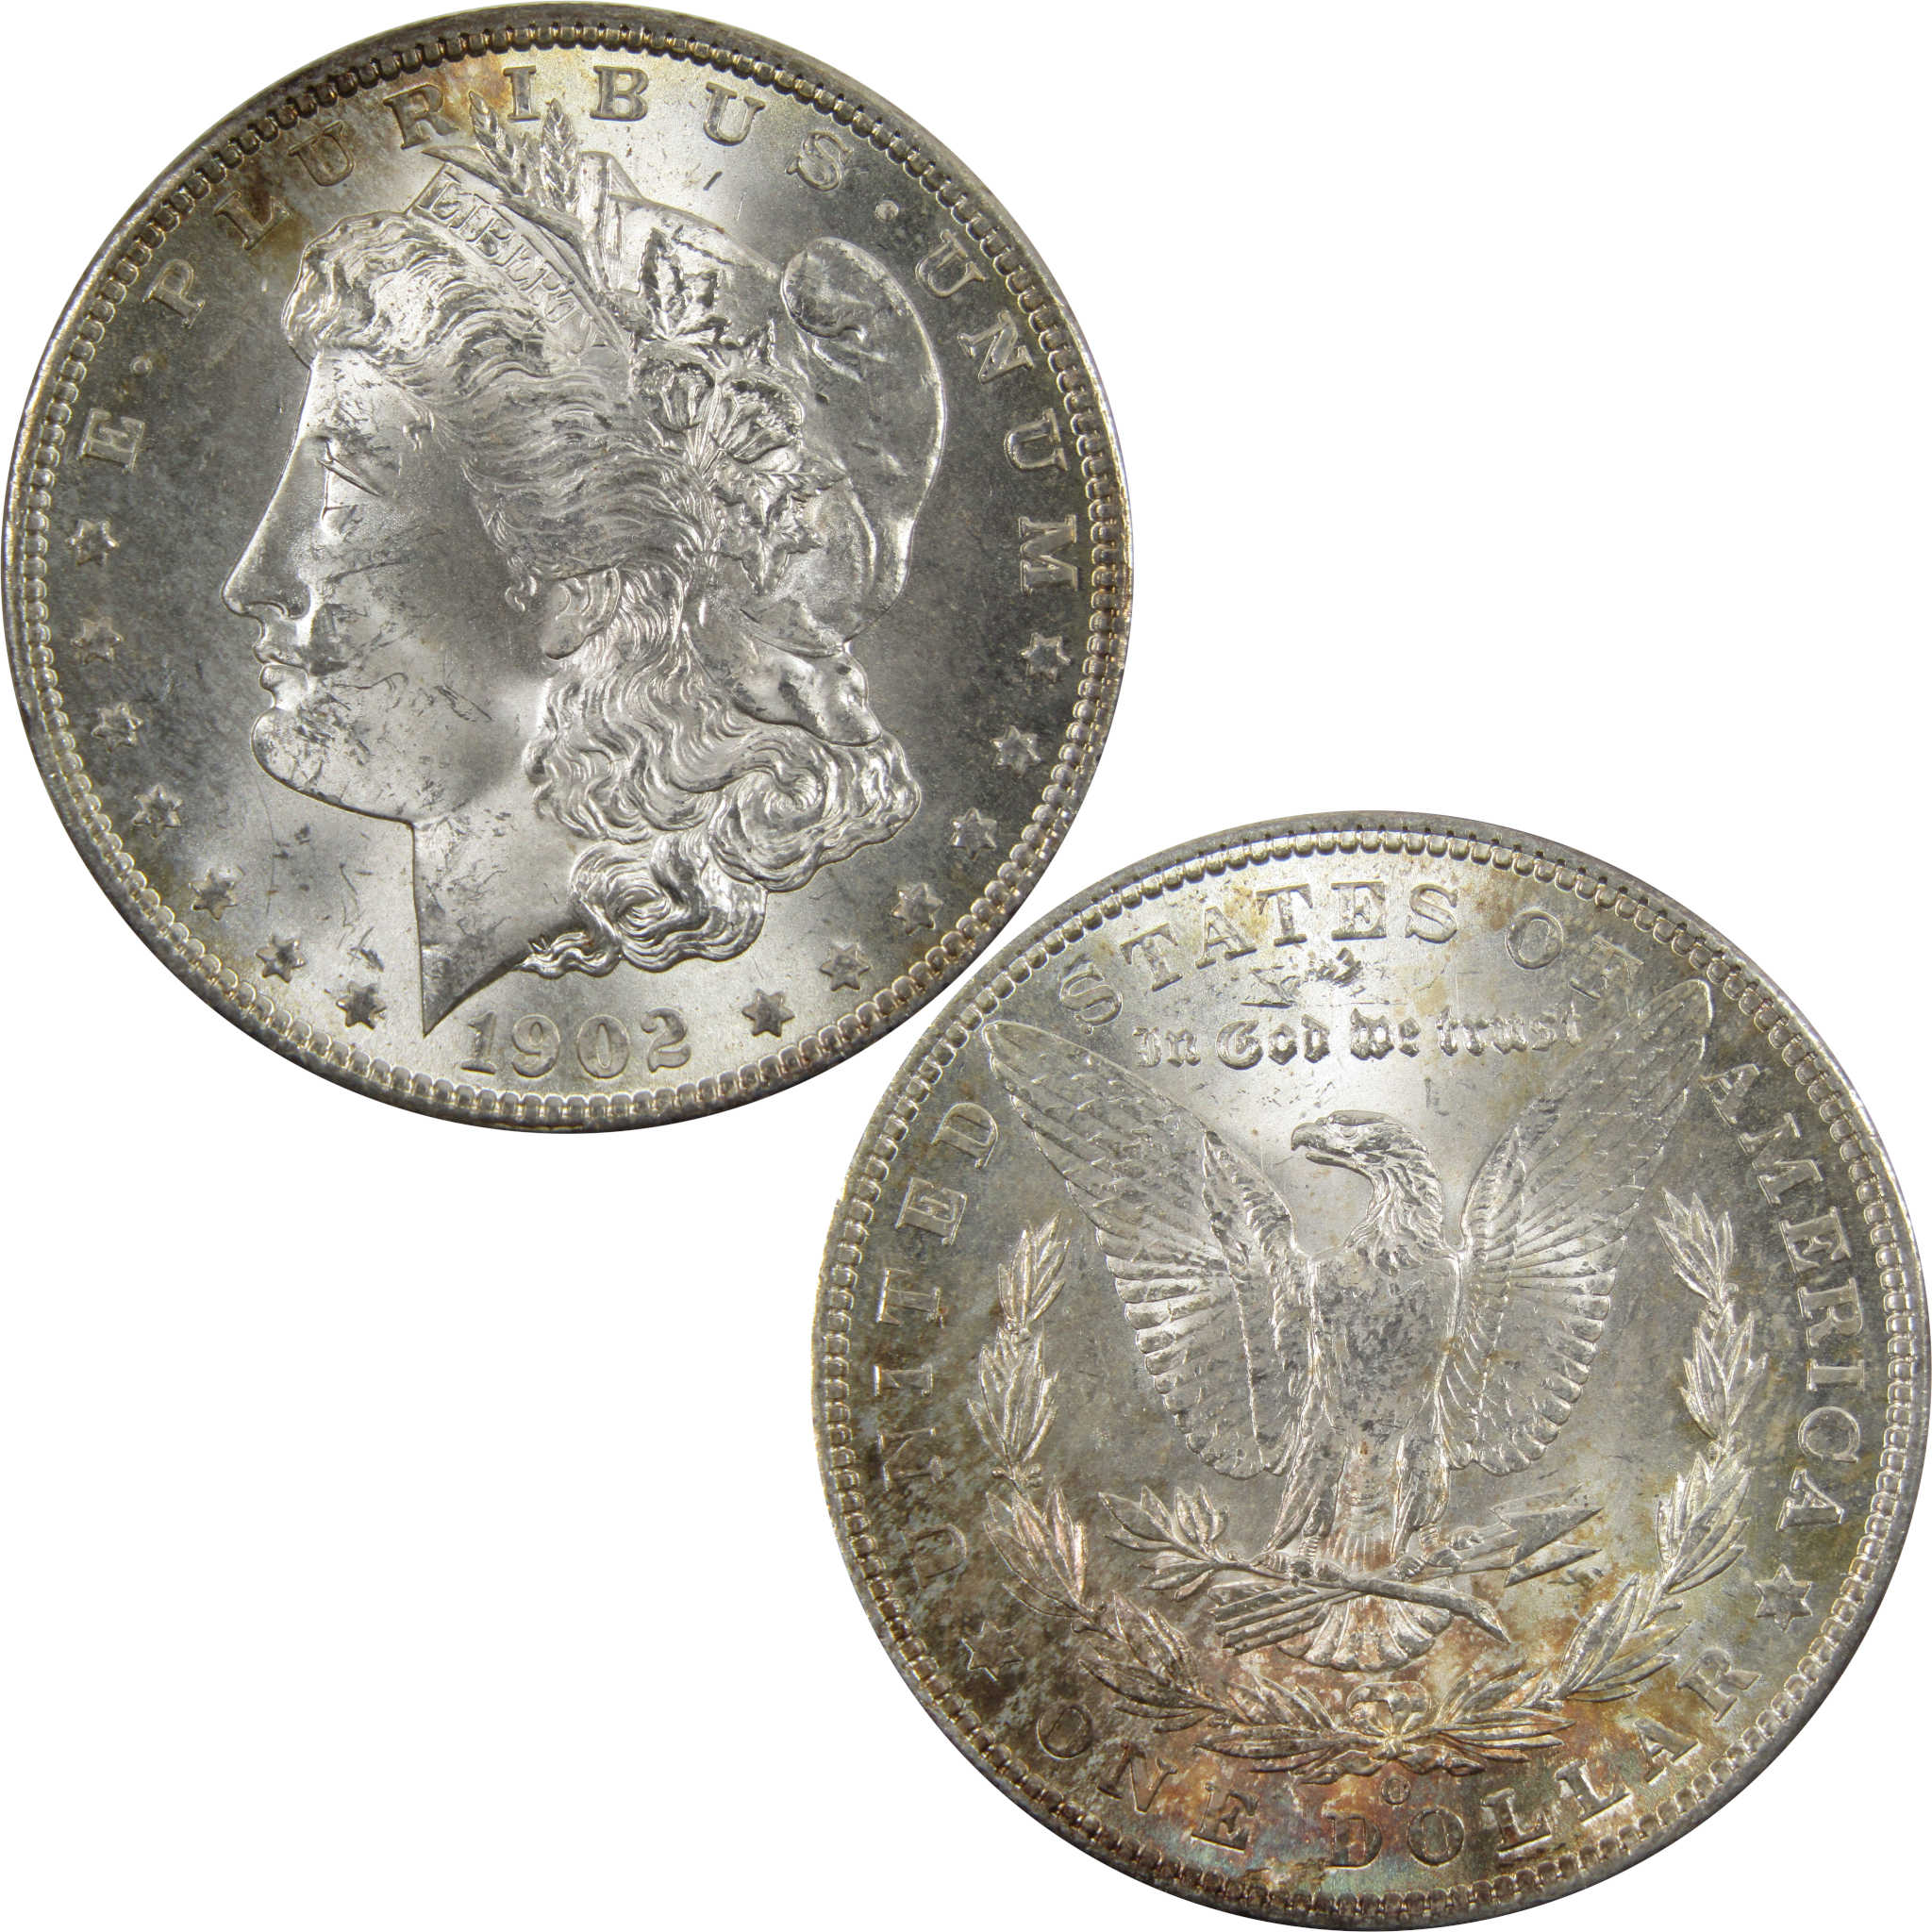 1902 O Morgan Dollar BU Choice Uncirculated 90% Silver $1 SKU:I4729 - Morgan coin - Morgan silver dollar - Morgan silver dollar for sale - Profile Coins &amp; Collectibles